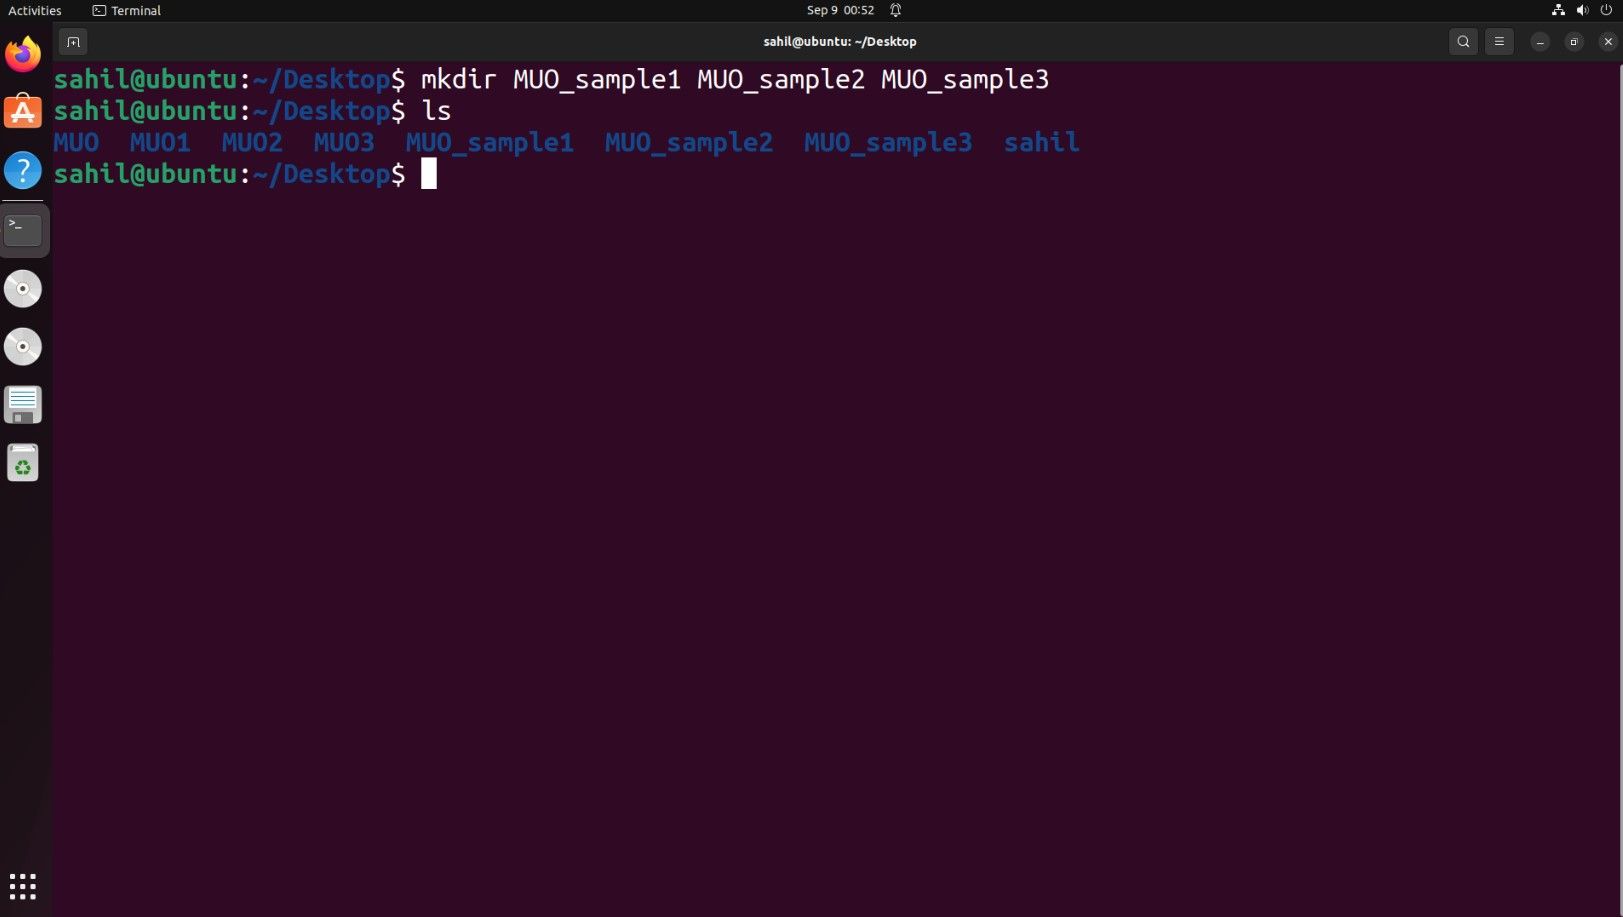 Janela de terminal do Ubuntu com trechos de código para criar vários diretórios